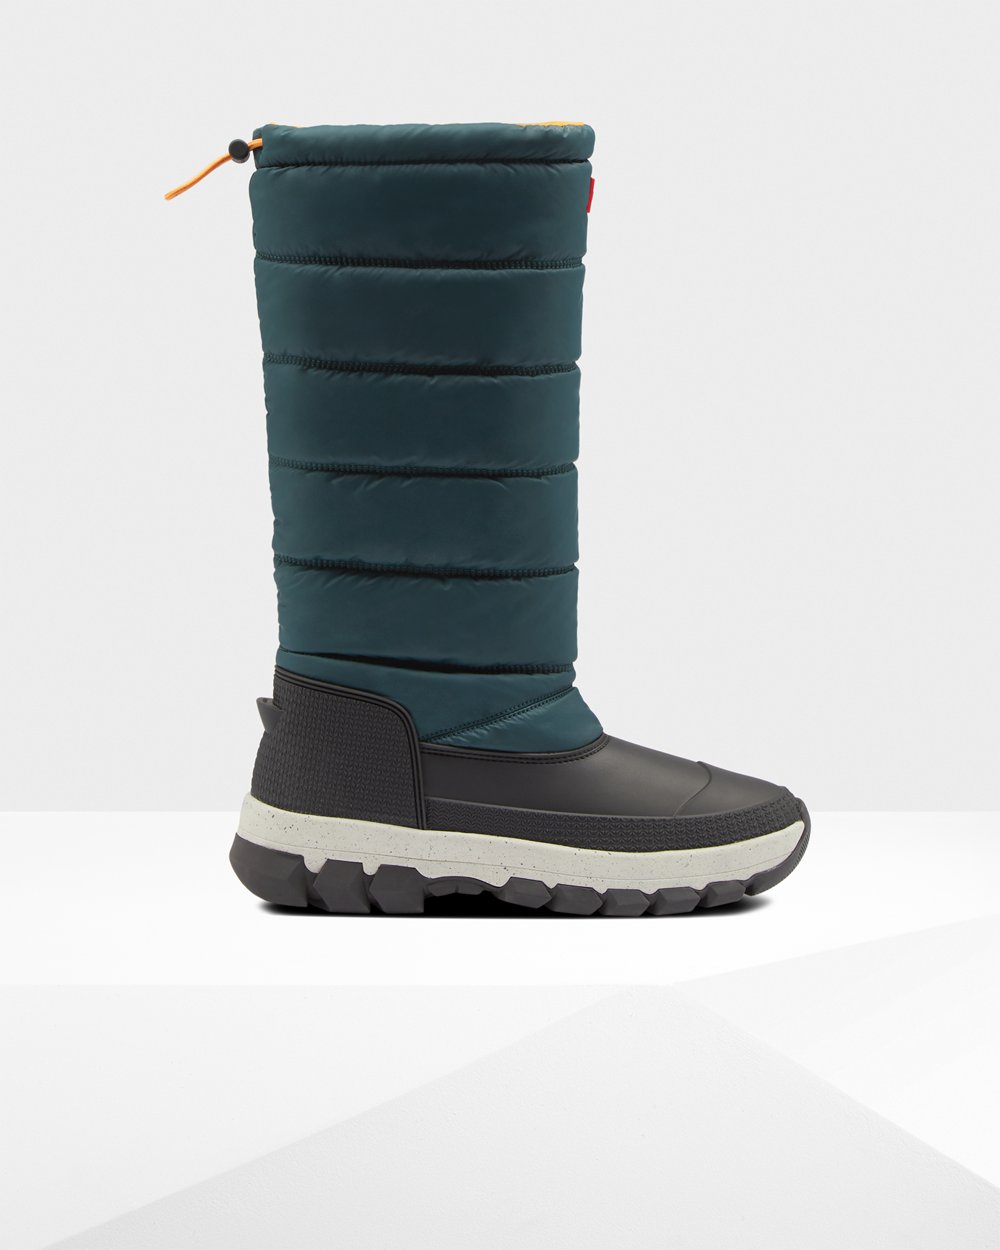 Womens Snow Boots - Hunter Original Insulated Tall (34KQJCFIX) - Green/Grey